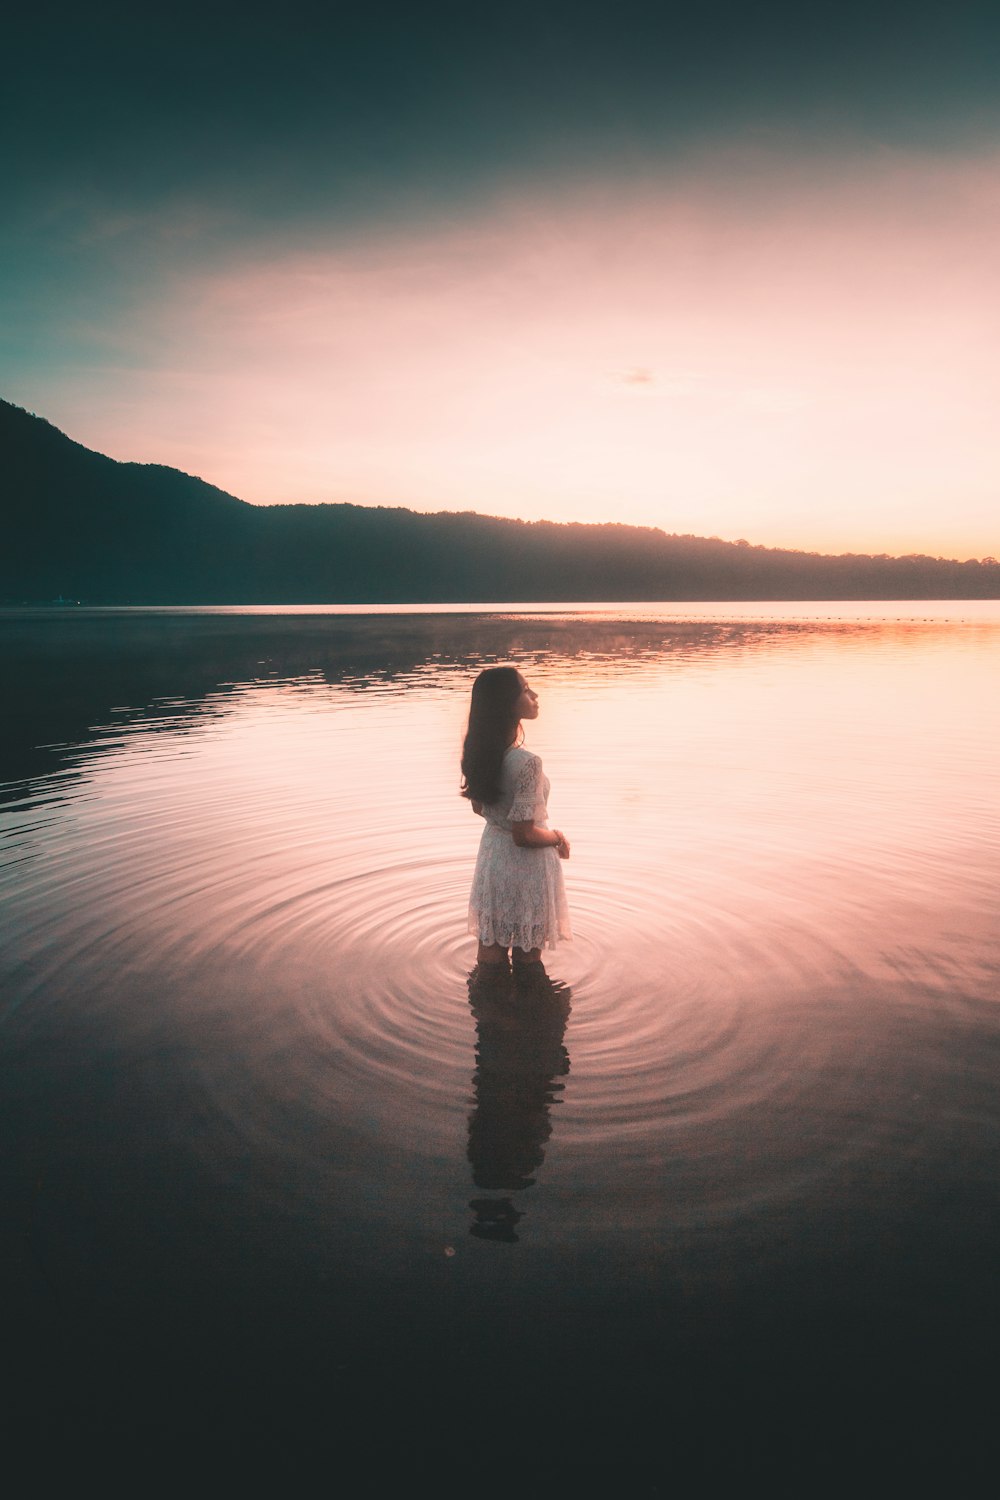 Mujer en vestido blanco de pie sobre el agua durante el día